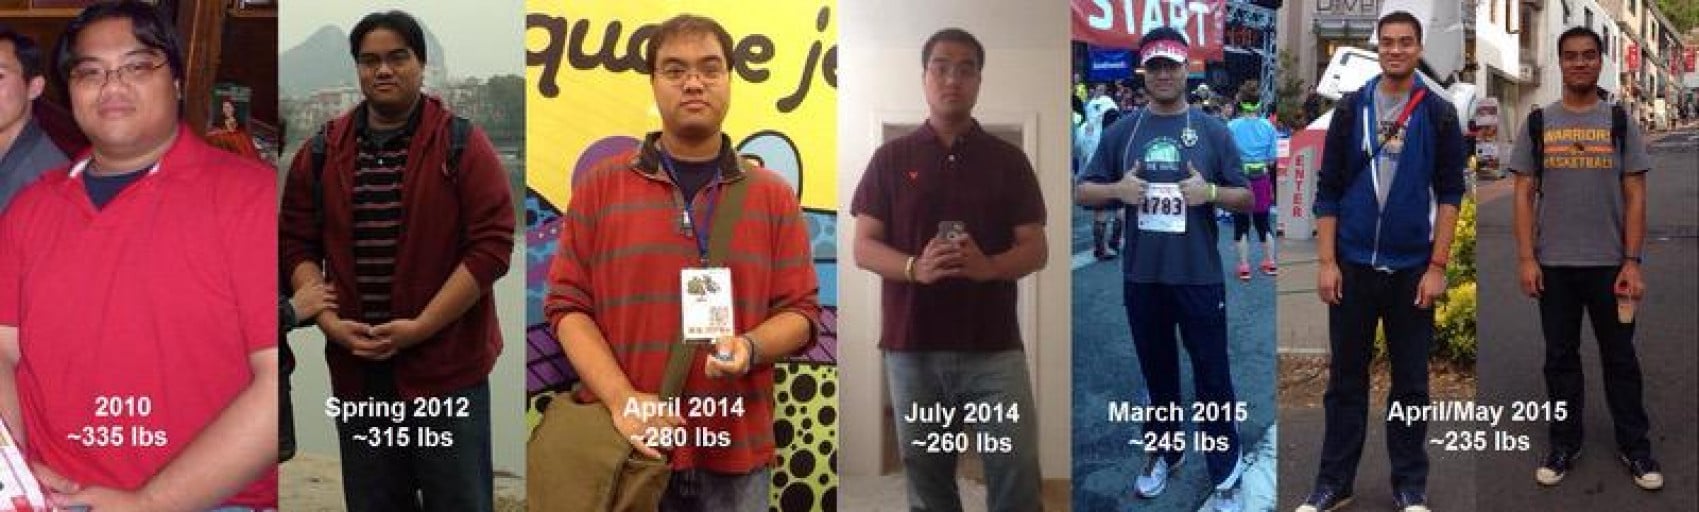 6 foot 2 Male Progress Pics of 100 lbs Fat Loss 335 lbs to 235 lbs